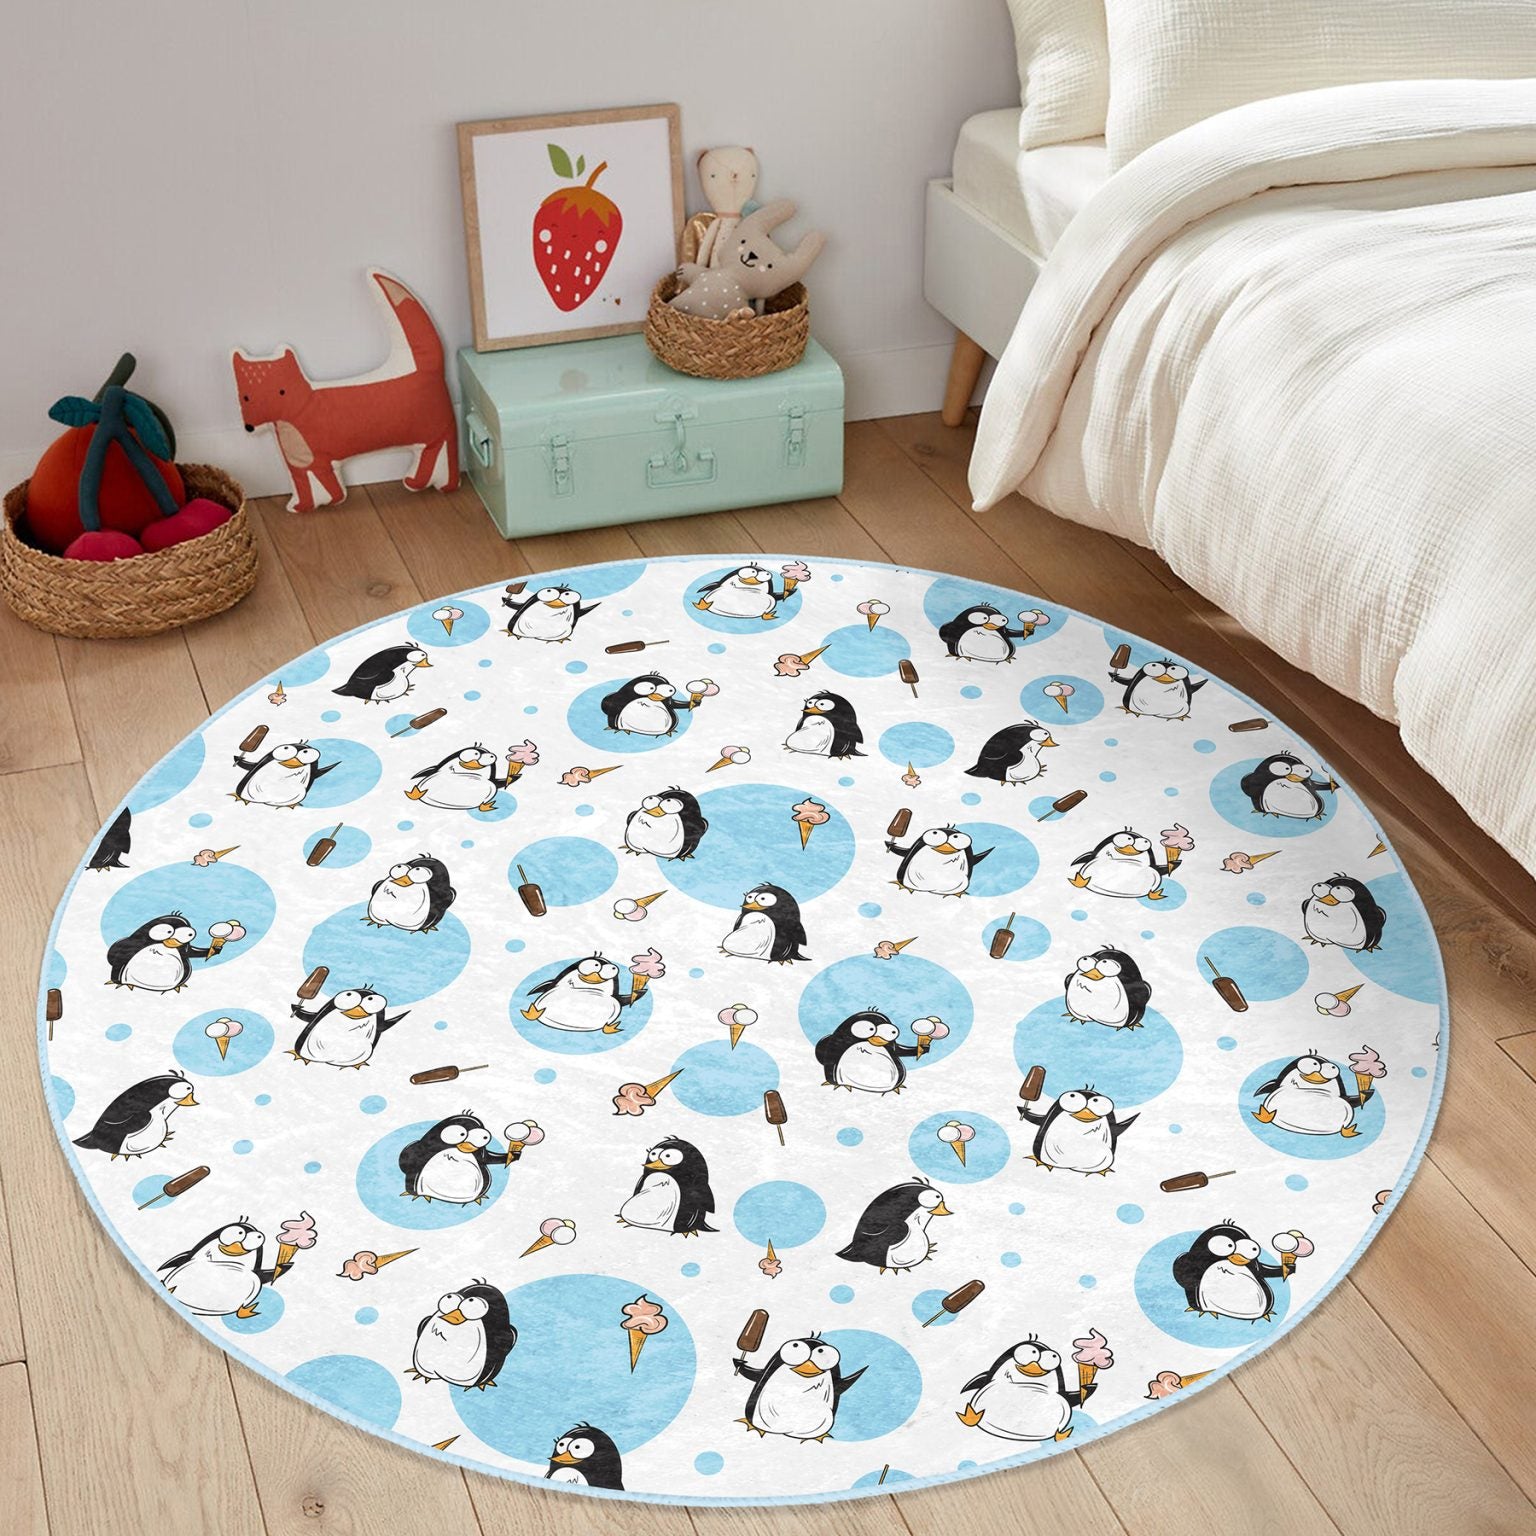 Lively Penguin Design Rug for Children's Room